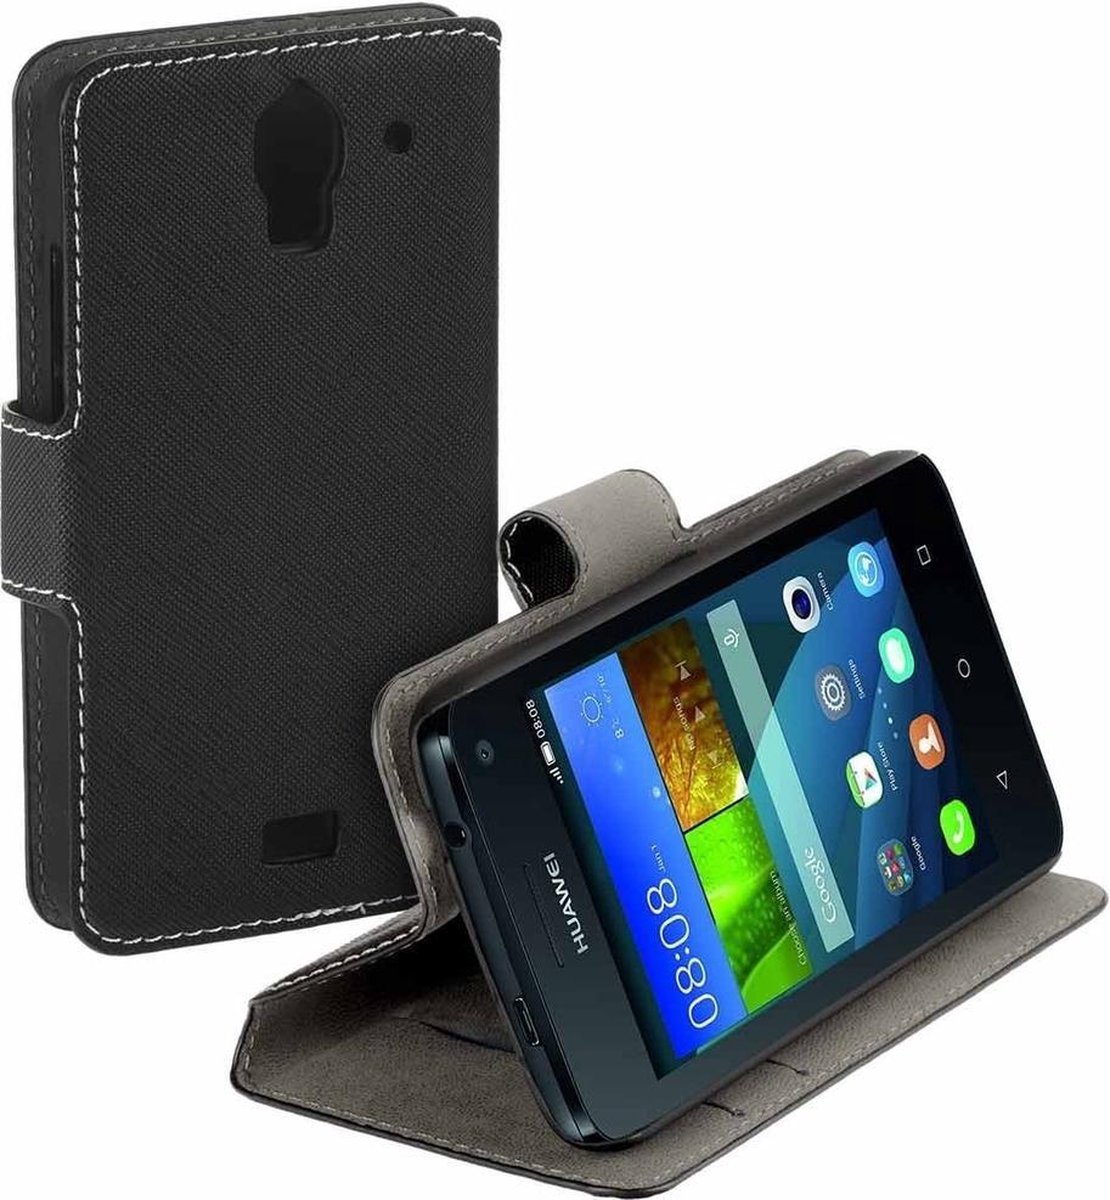 Zo snel als een flits zal ik doen Zijdelings HC zwart book case style Huawei Y360 wallet cover hoesje | bol.com